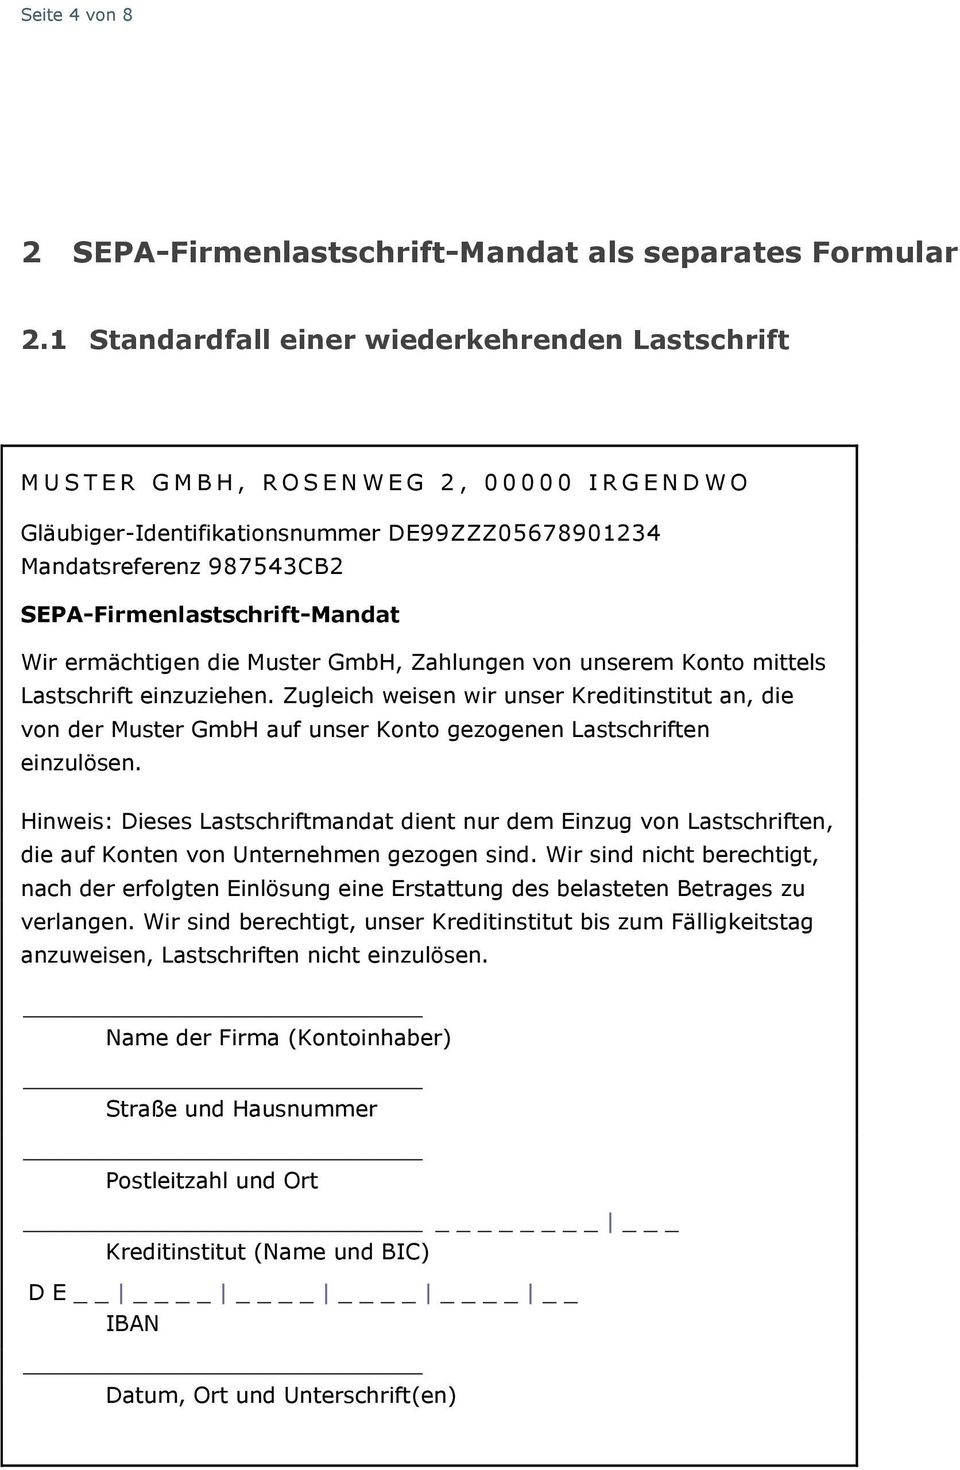 Beispiel Formulare Fur Das Sepa Firmenlastschrift Mandat Grundlage Regelwerk Fur Die Sepa Firmen Lastschrift Berlin Pdf Kostenfreier Download